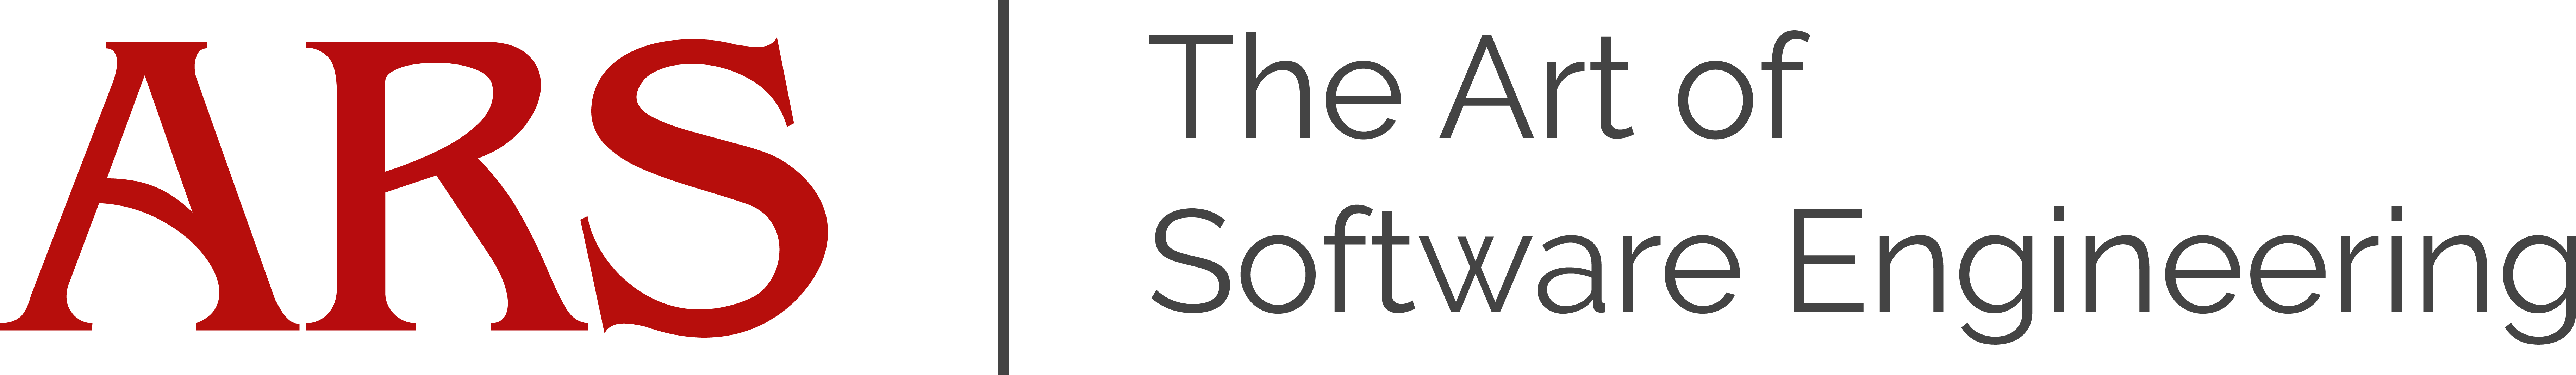 ARS_Logo